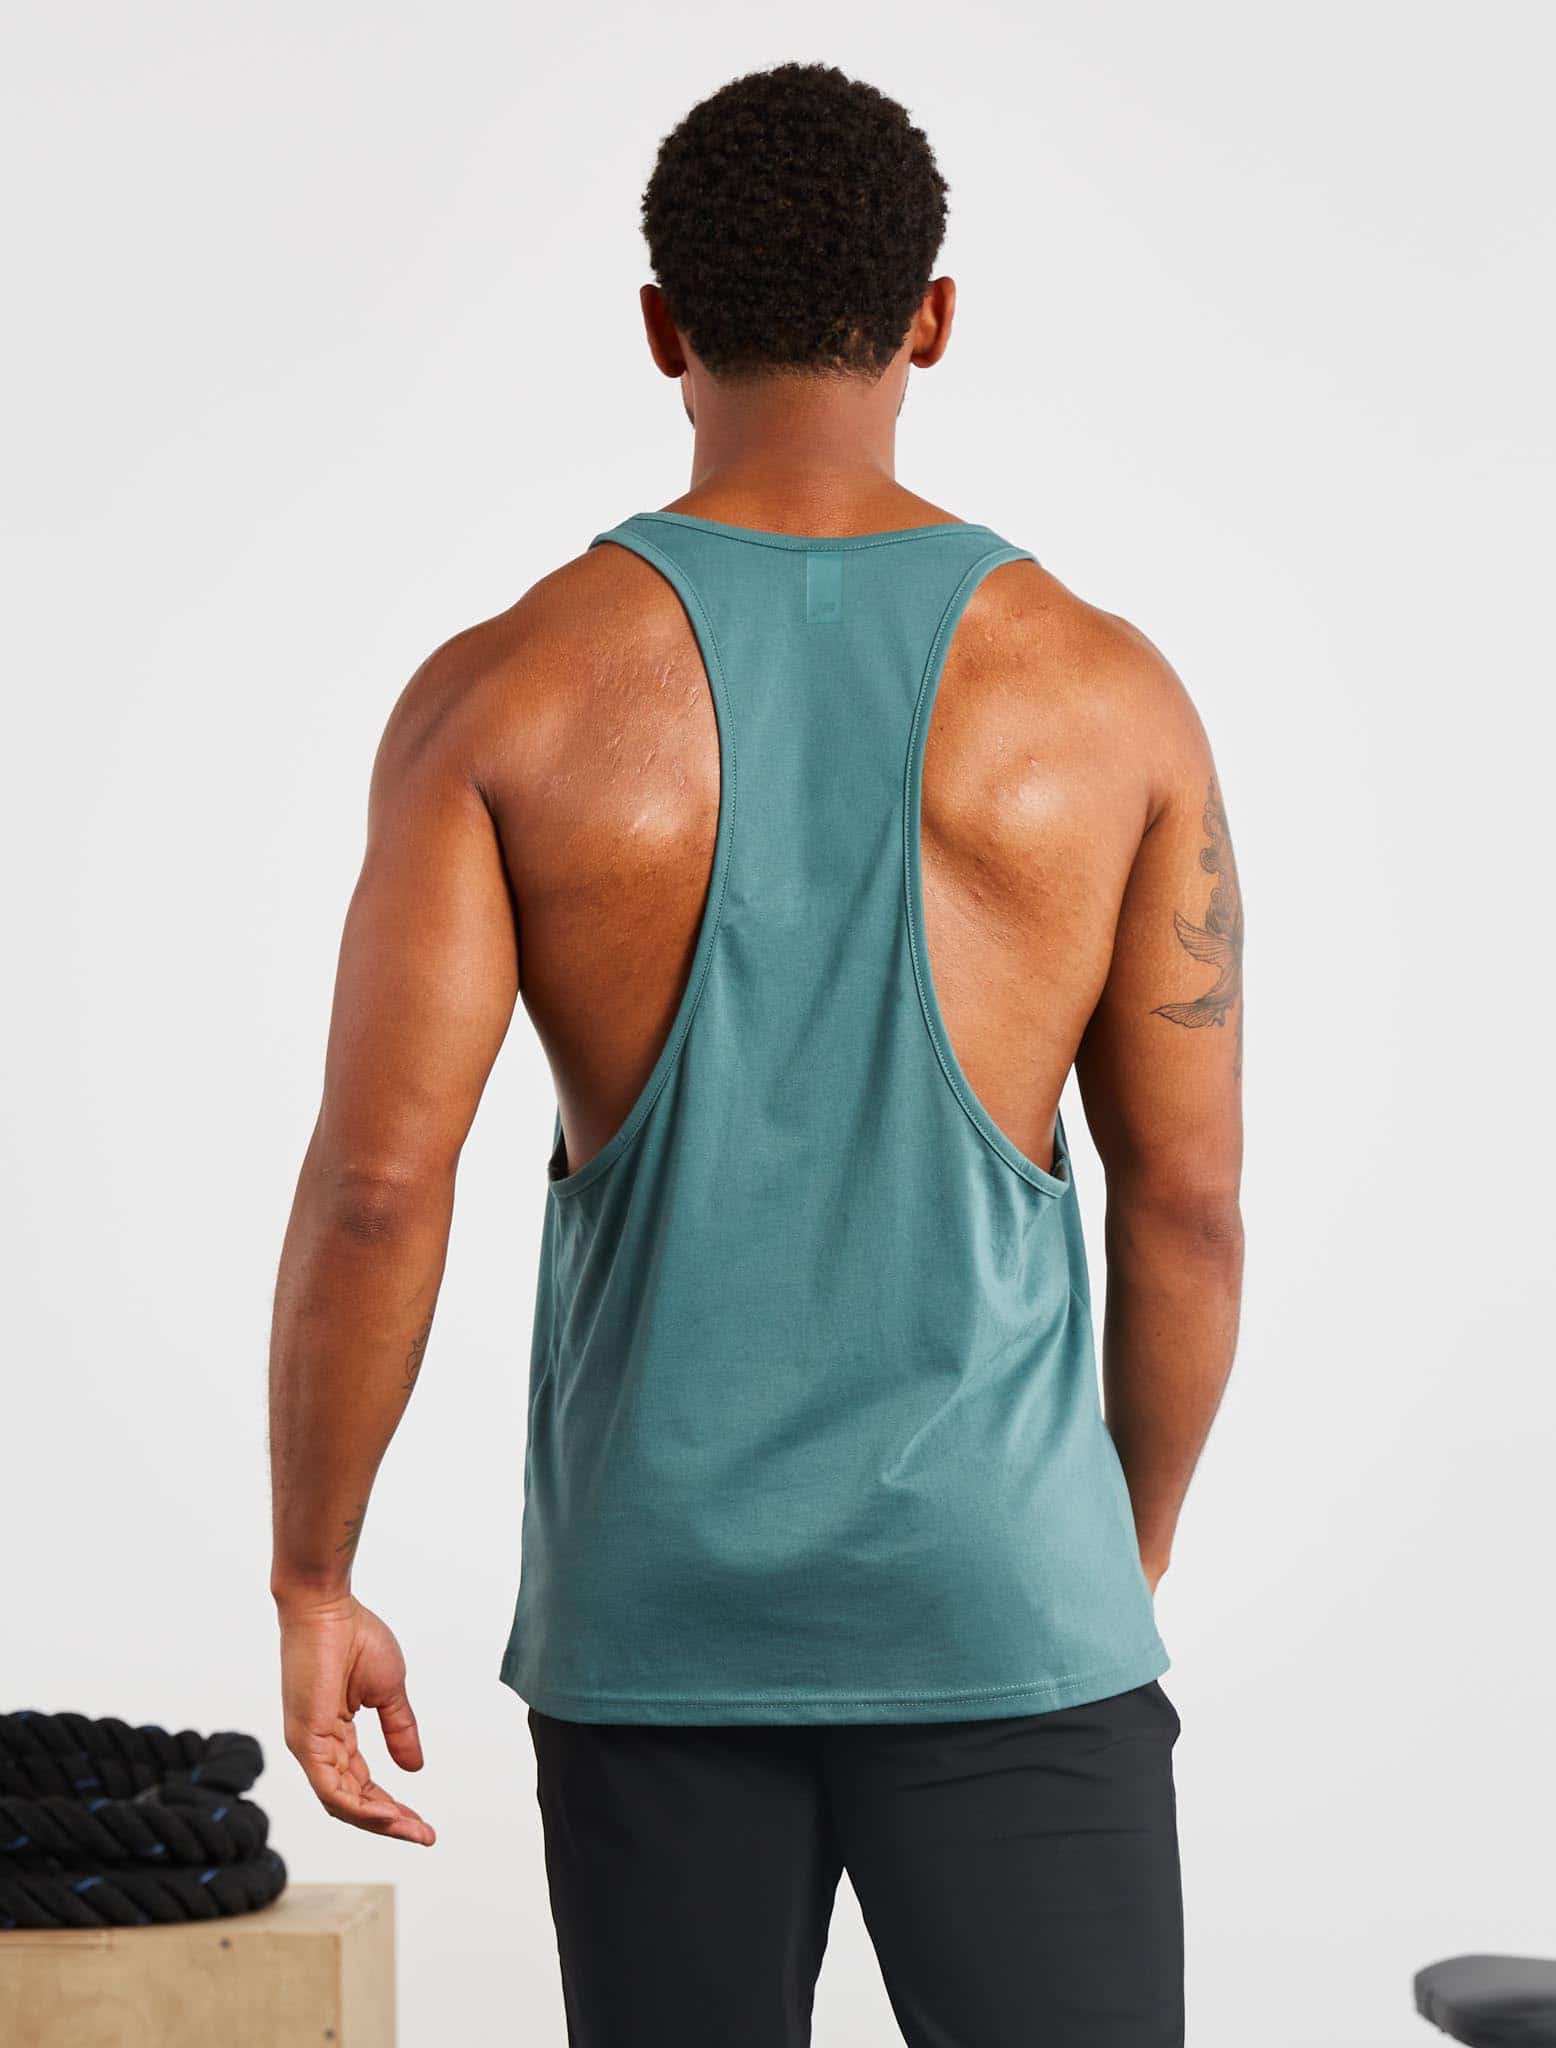 Icon Stringer Vest / Teal Pursue Fitness 2